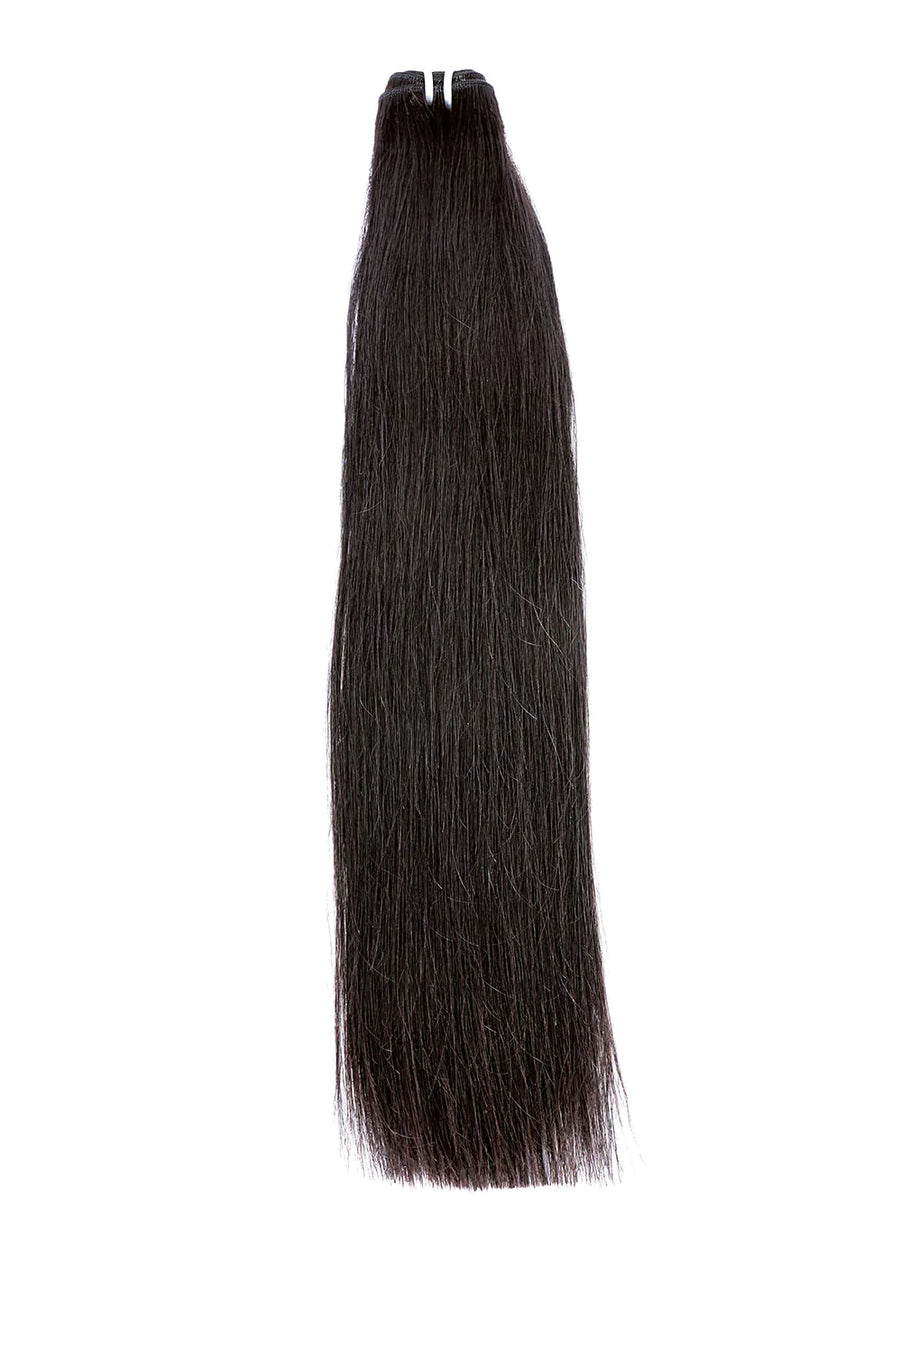 CAMBODIAN HAIR STRAIGHT HAIR BUNDLES